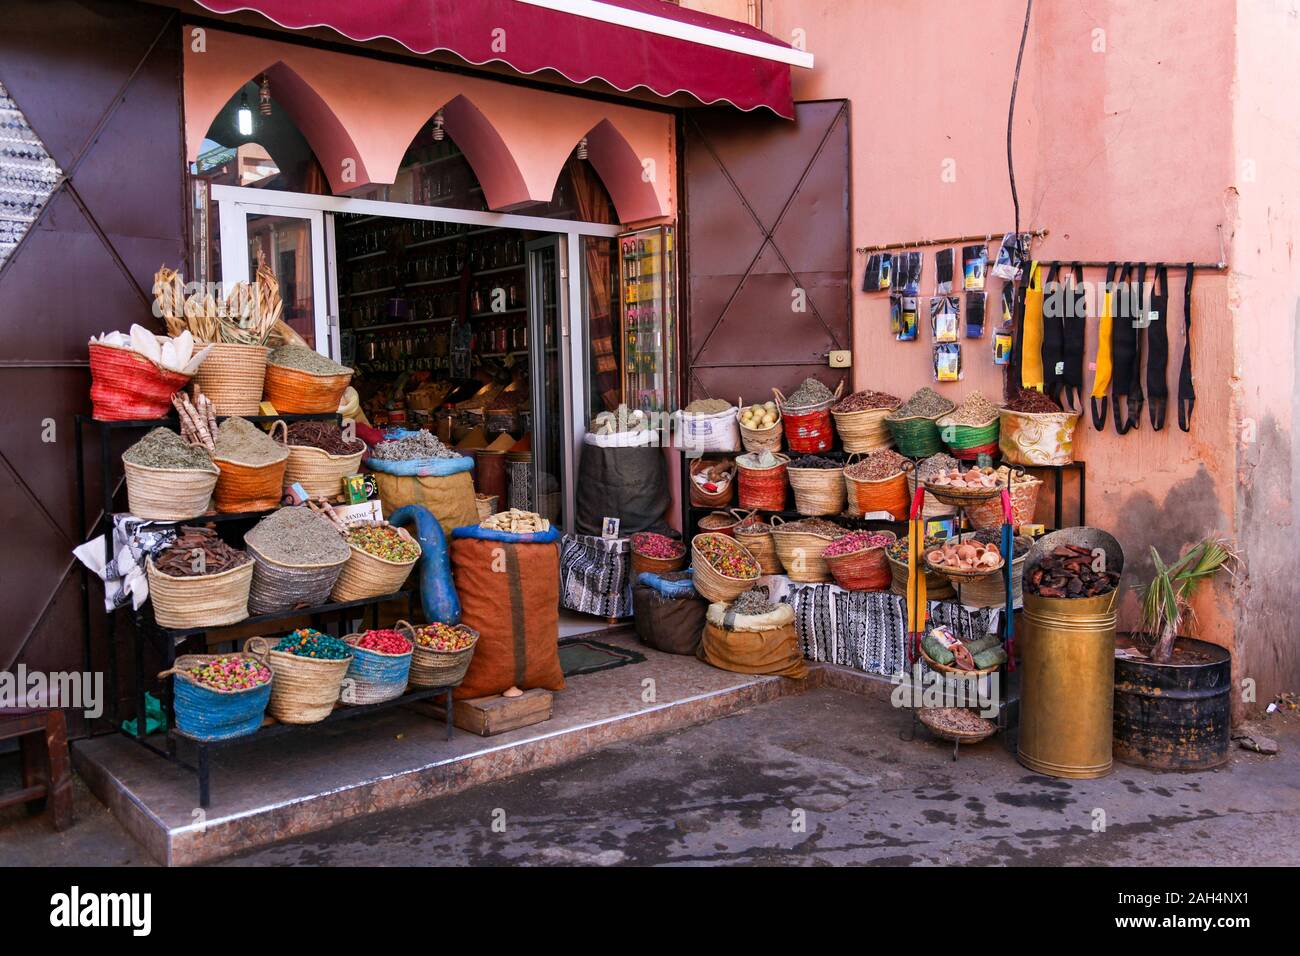 A shop in Marrakech Stock Photo